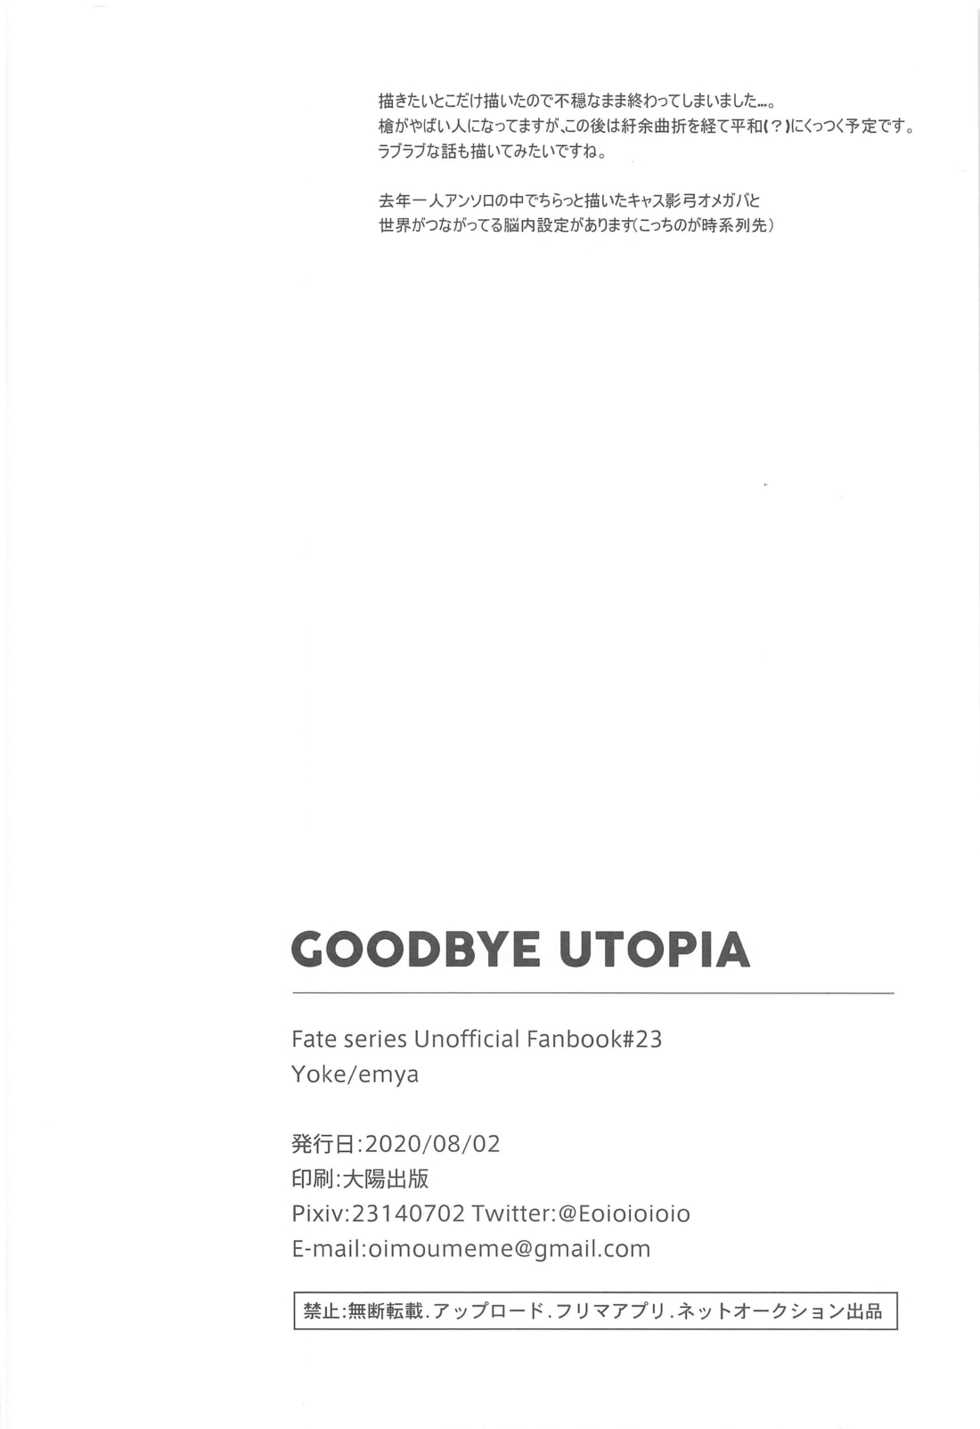 [Yoke (emya)] GOODBYE UTOPIA (Fate/stay night) - Page 21